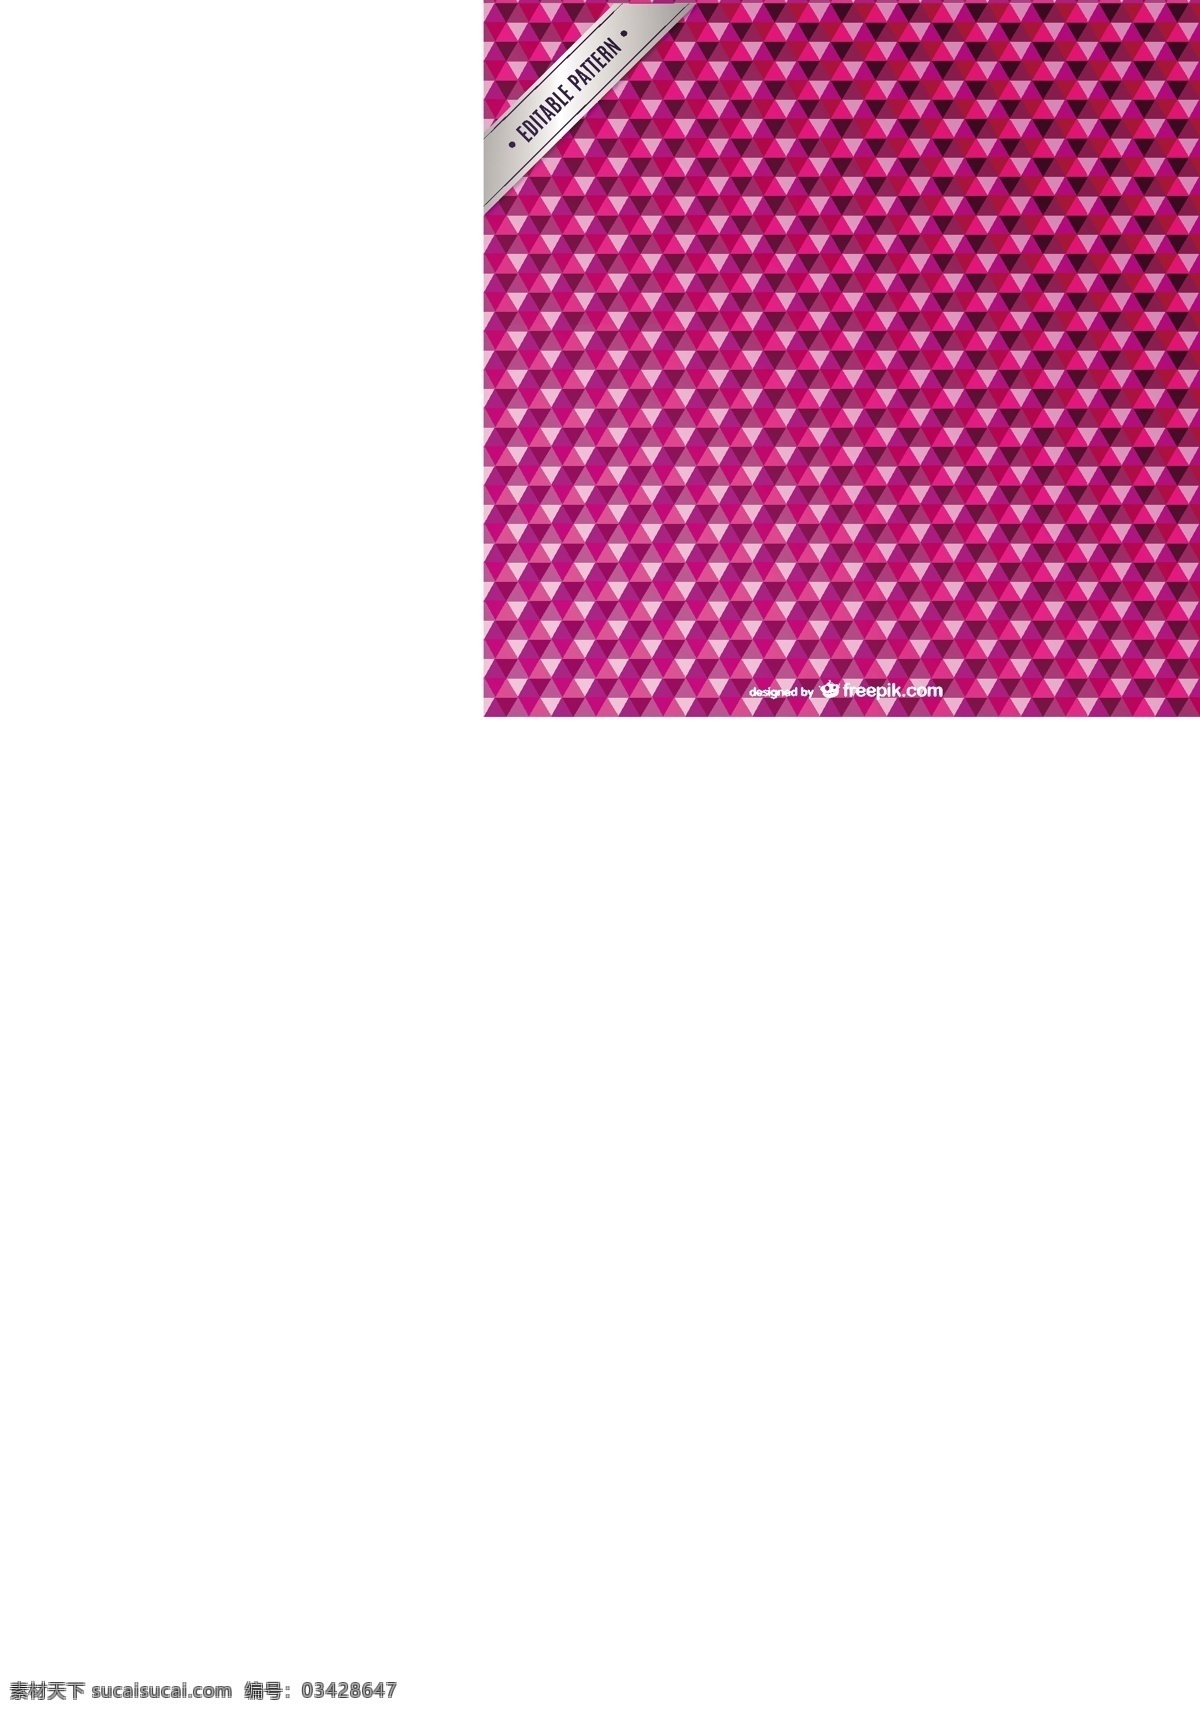 紫红色 三角形 图案 背景 抽象的三角形 三角形的背景 背景下 抽象的背景 紫色